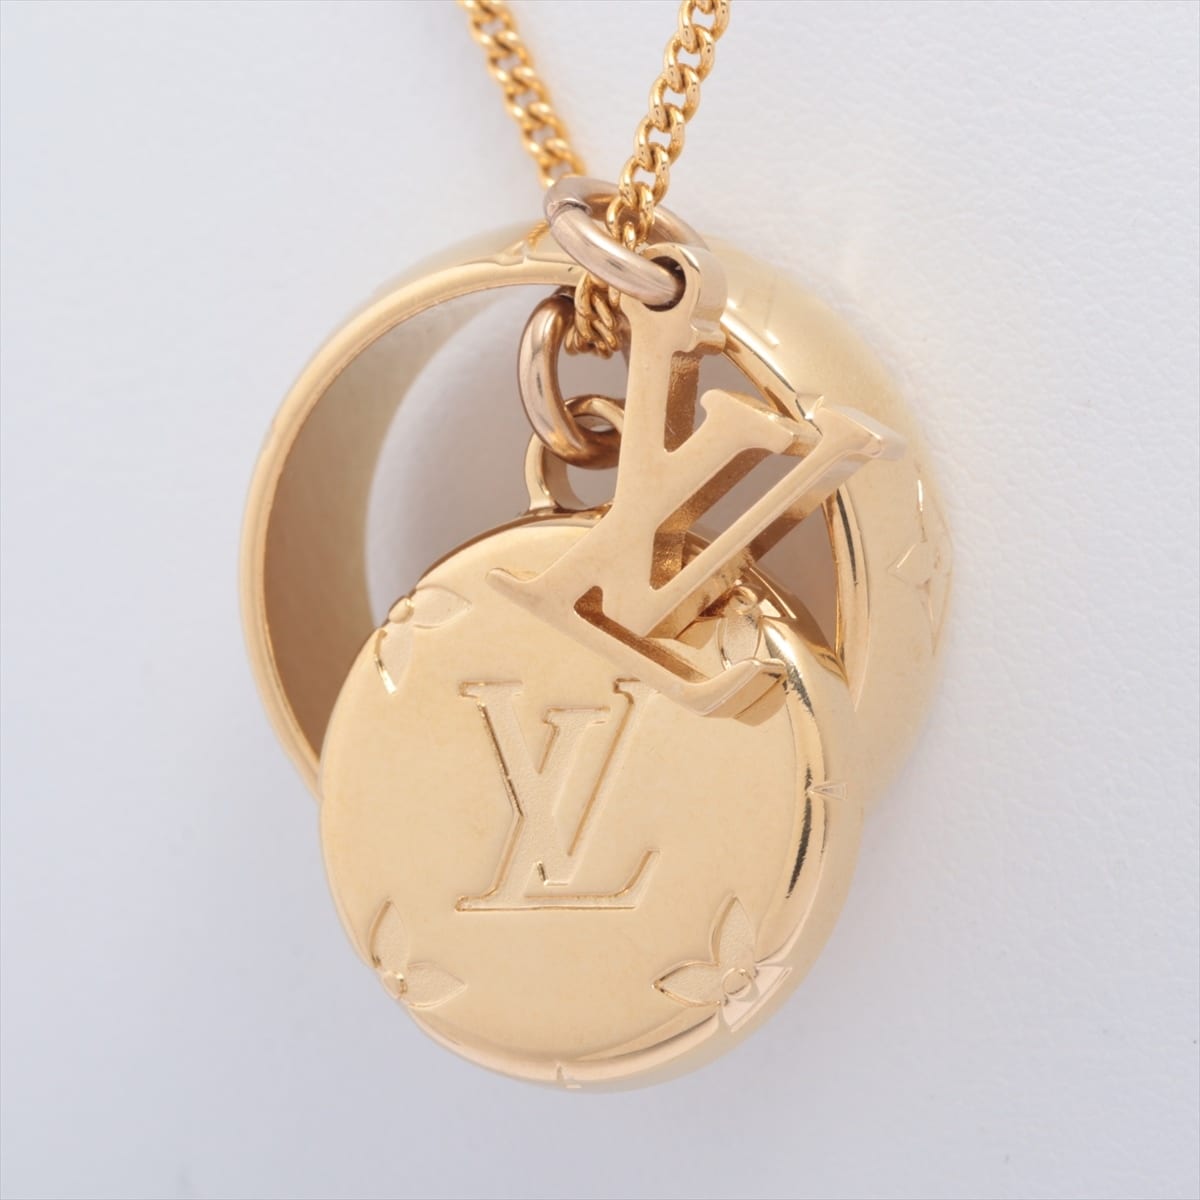 Louis Vuitton M80189 Ring necklace Monogram DI0231 Necklace GP Gold